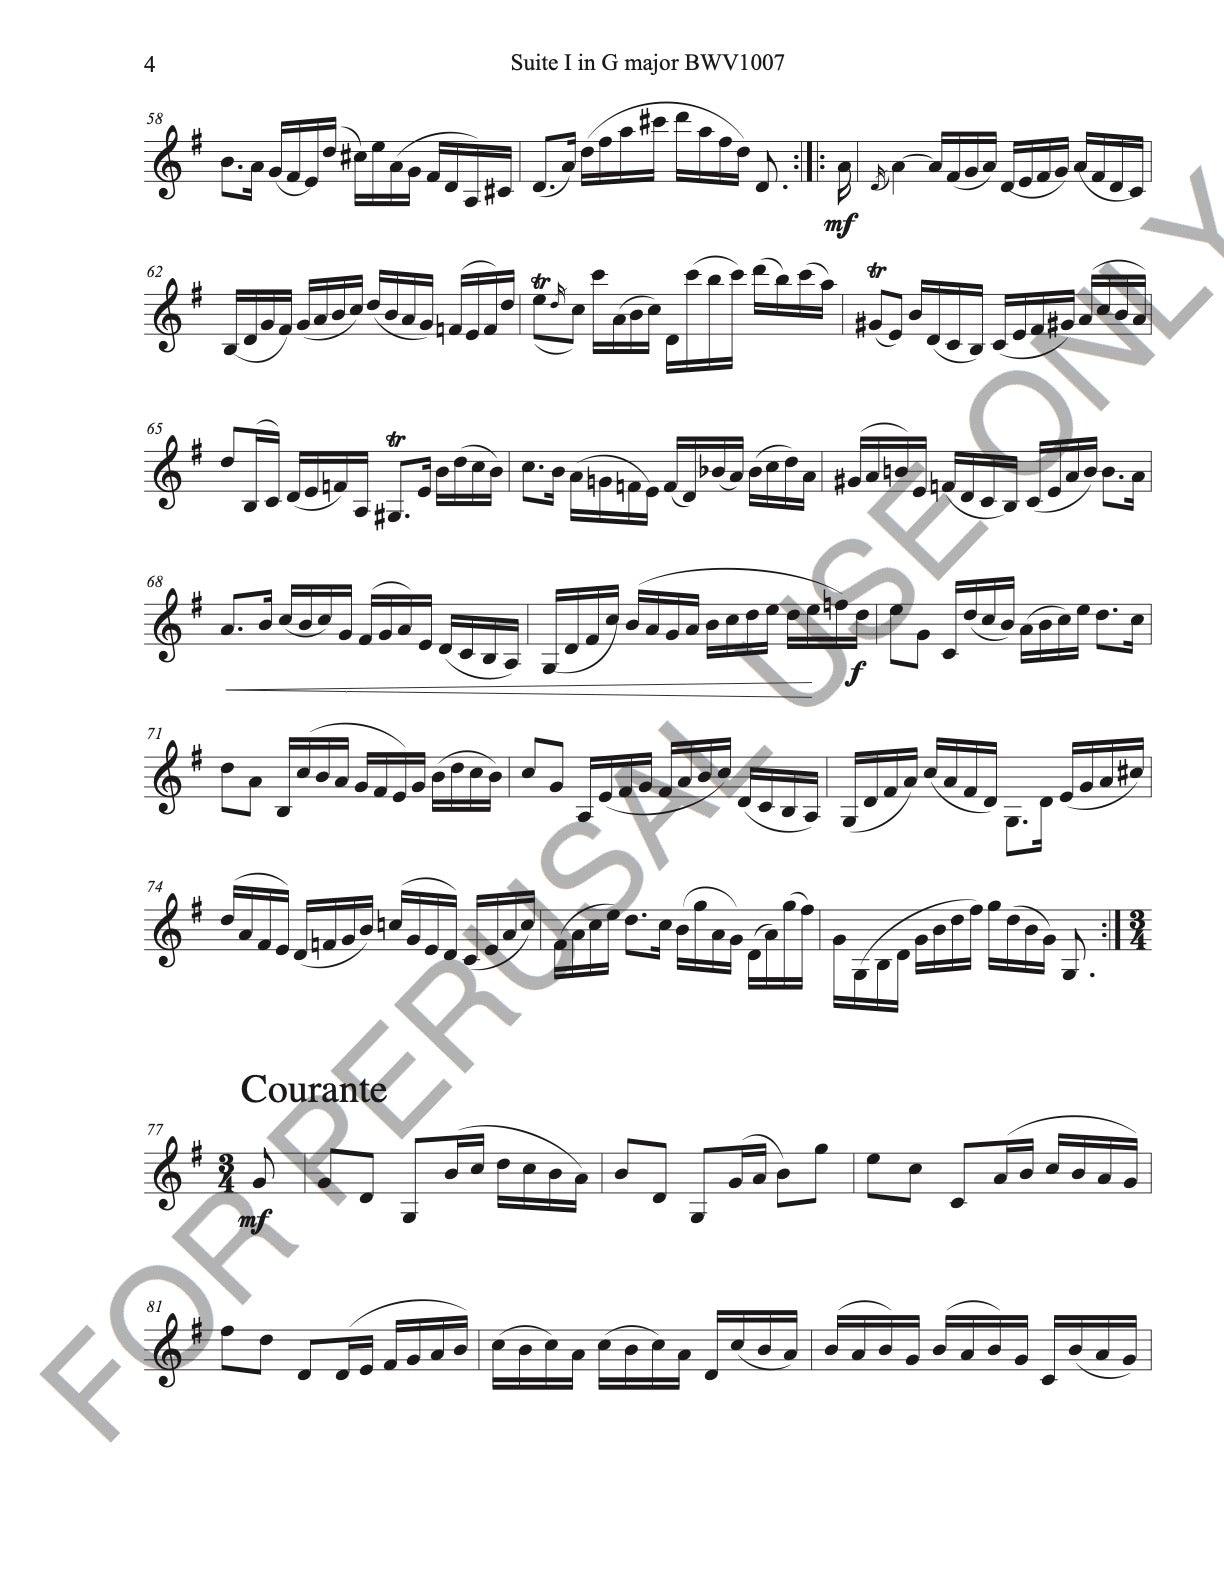 Bach's　Complete　Suite　sheet　Solo　Clarinet　Cello　no.1　Alto　music: